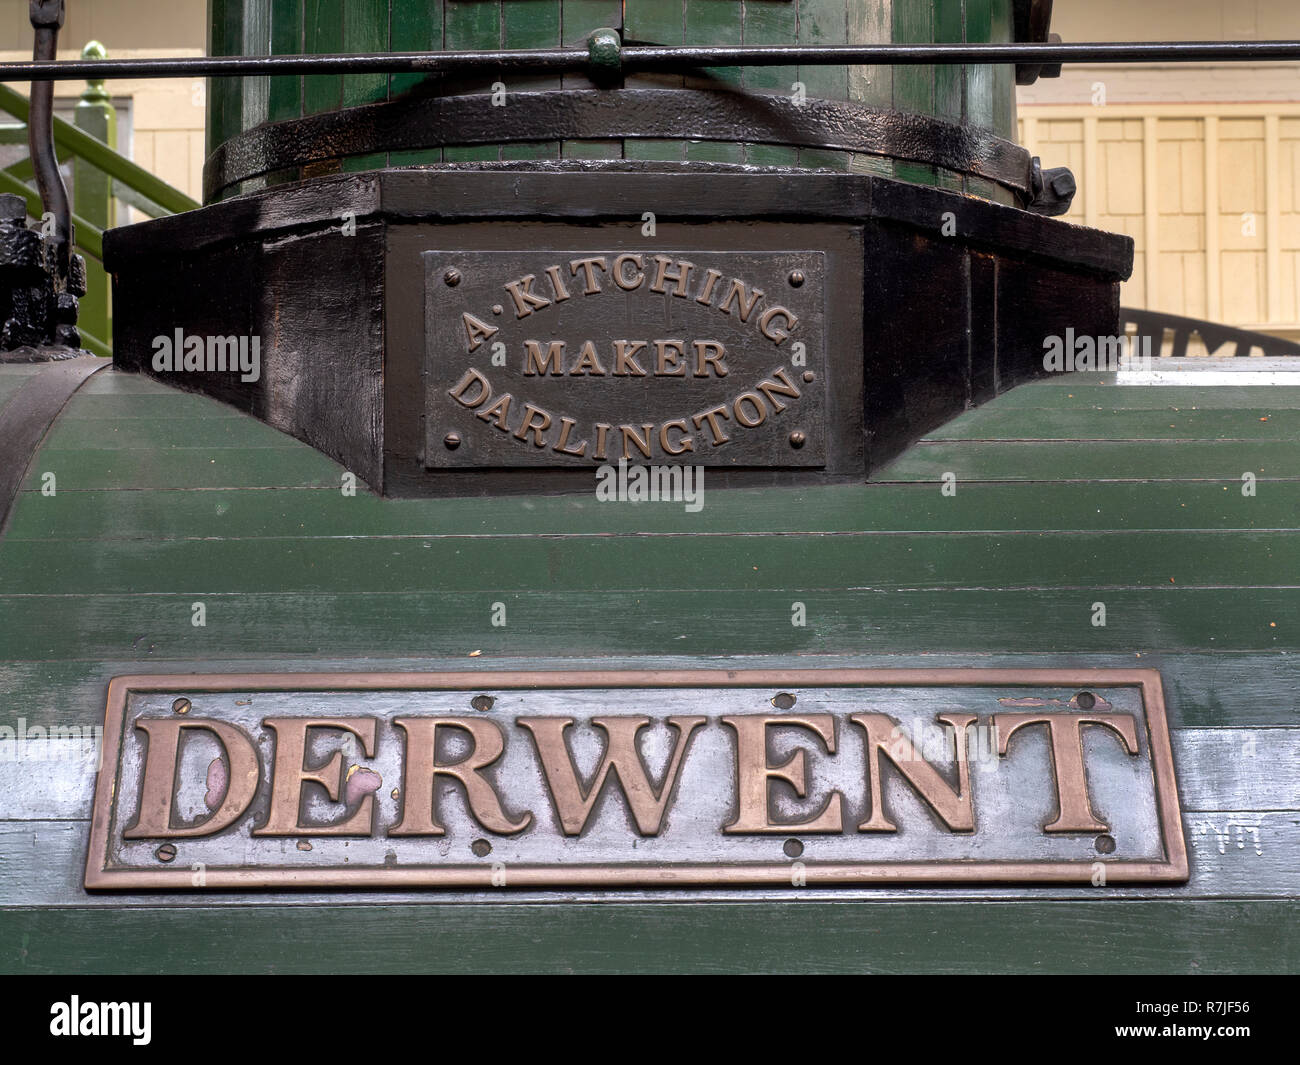 Namensschilder auf der Dampflok Derwent durch eine Kitching für die Stockton und Darlington Railway in 1845, jetzt in der Darlington Steam Museum. Stockfoto